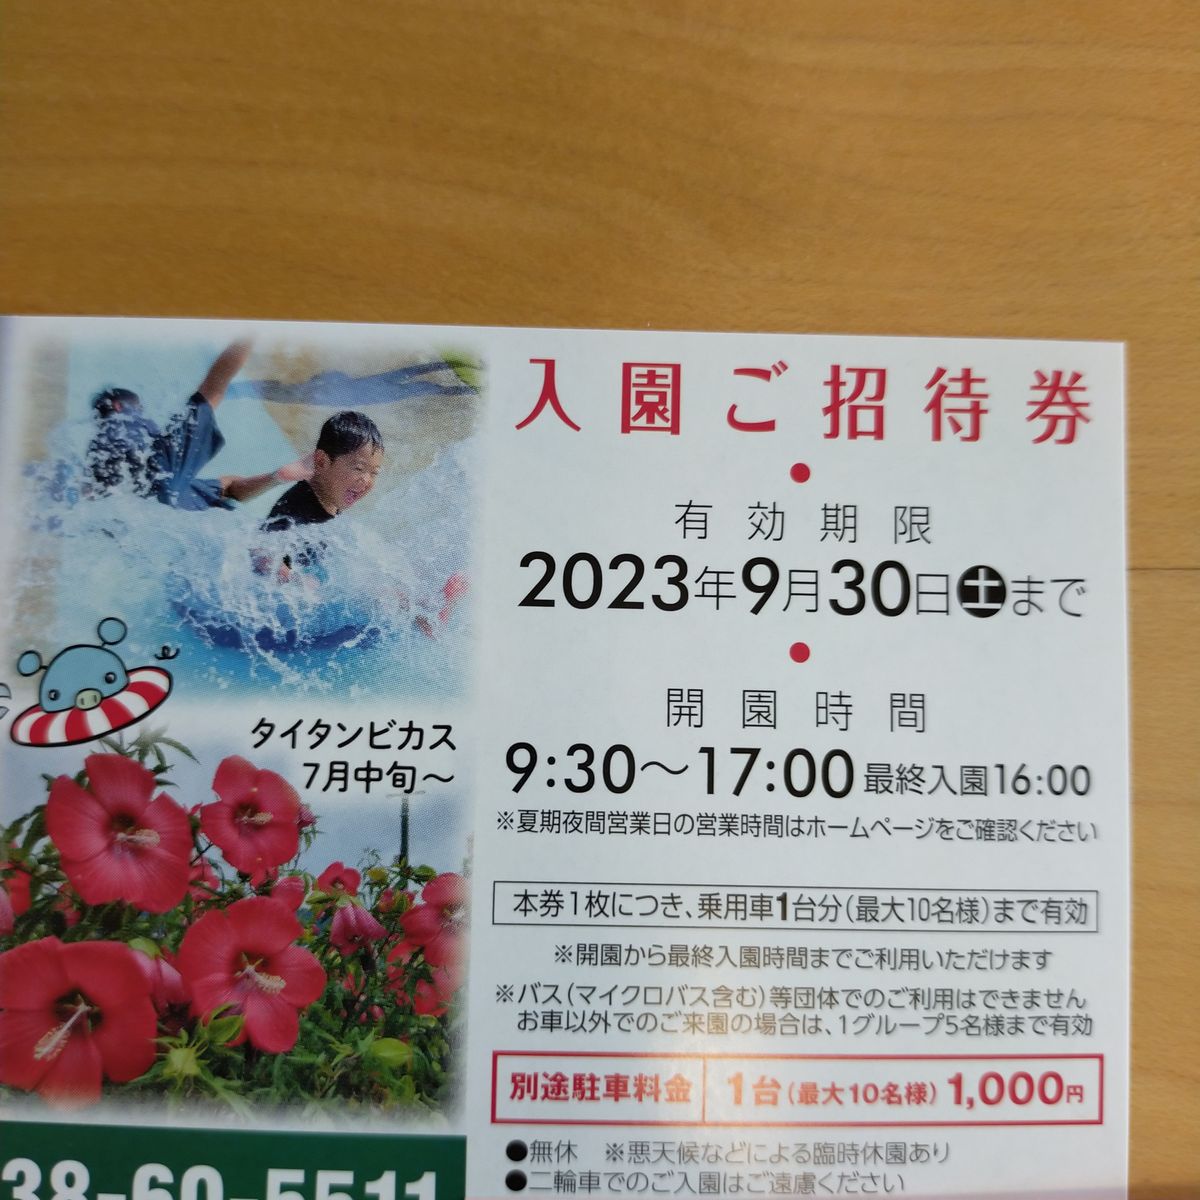 東京ドイツ村 入園ご招待券 1枚 有効期限:2023年9月30日まで 遊園地